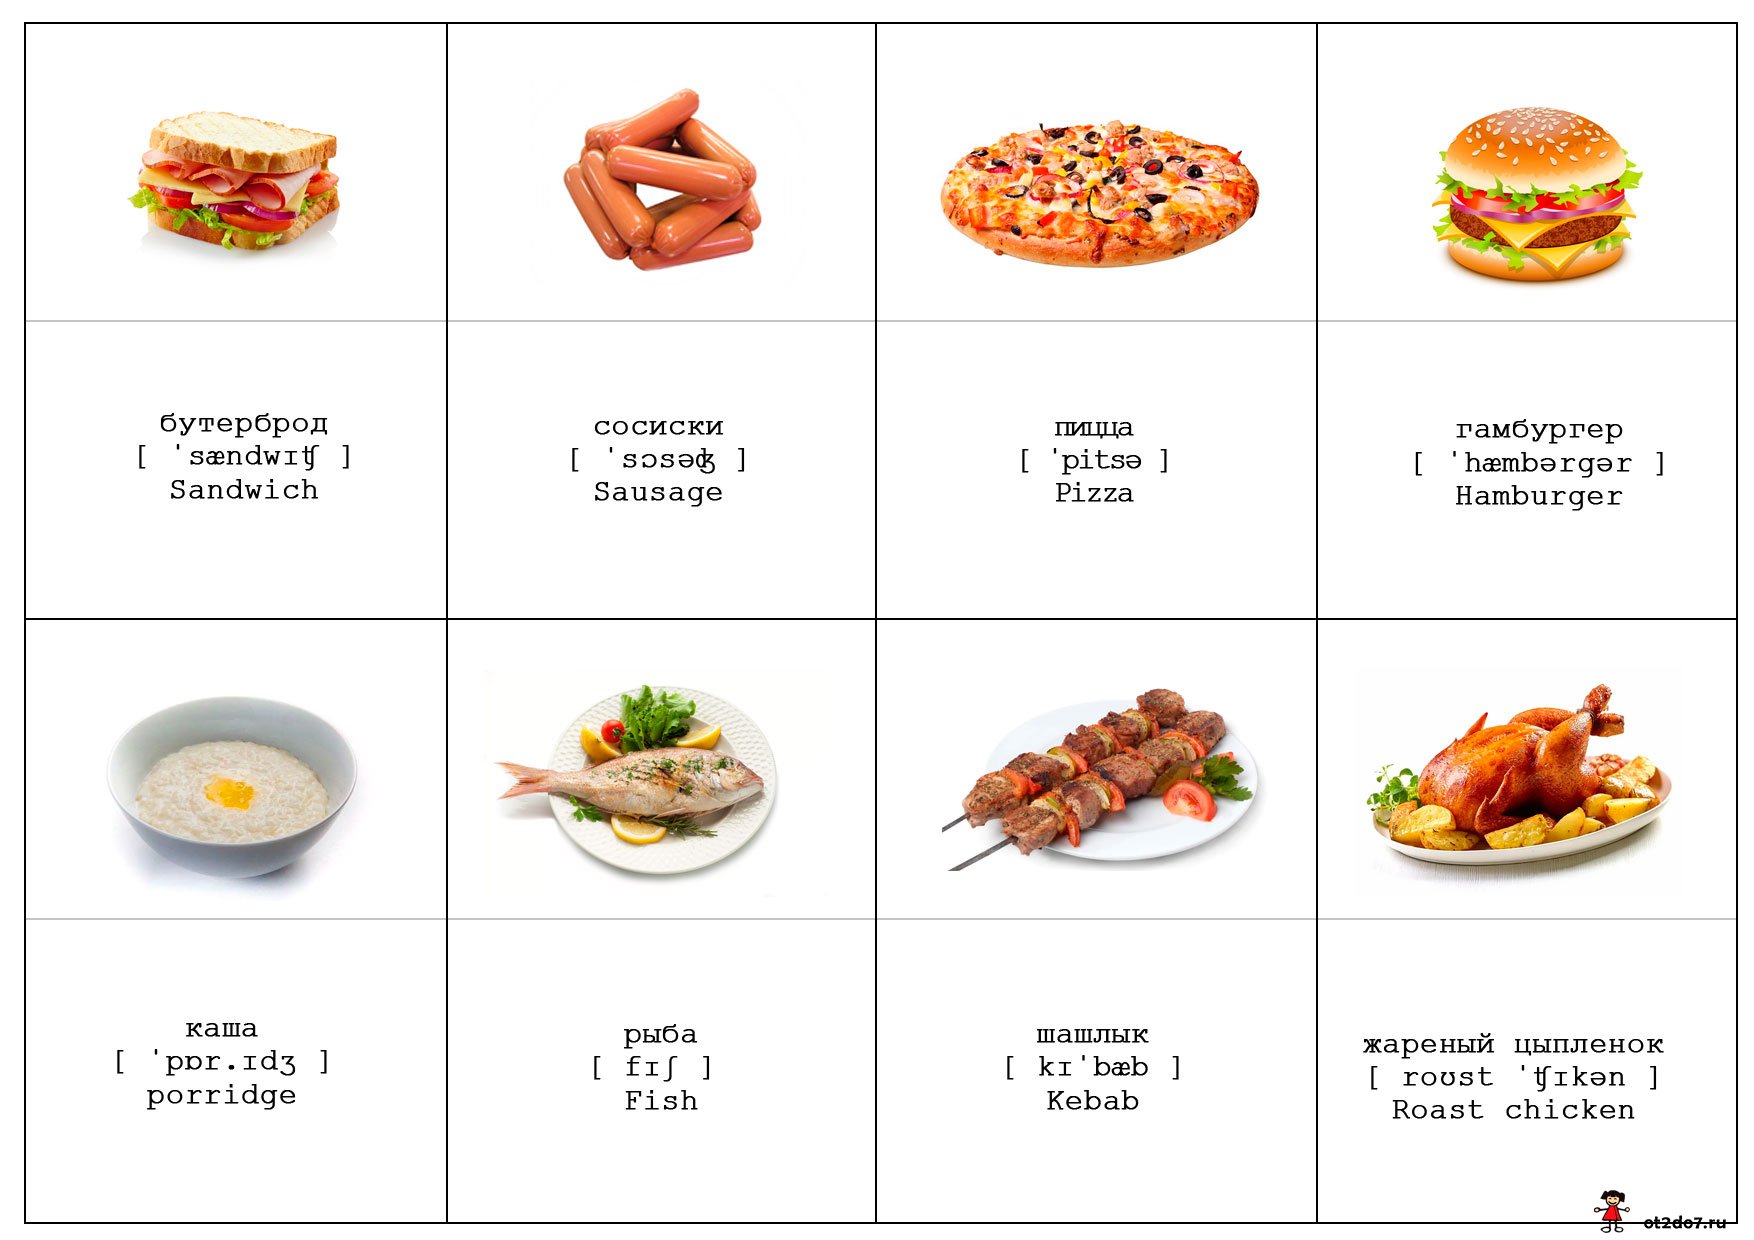 Ланч перевод. Сравнение блюд на английском. Готовая еда на английском. Еда на английском список. Опрос проект английских блюд.